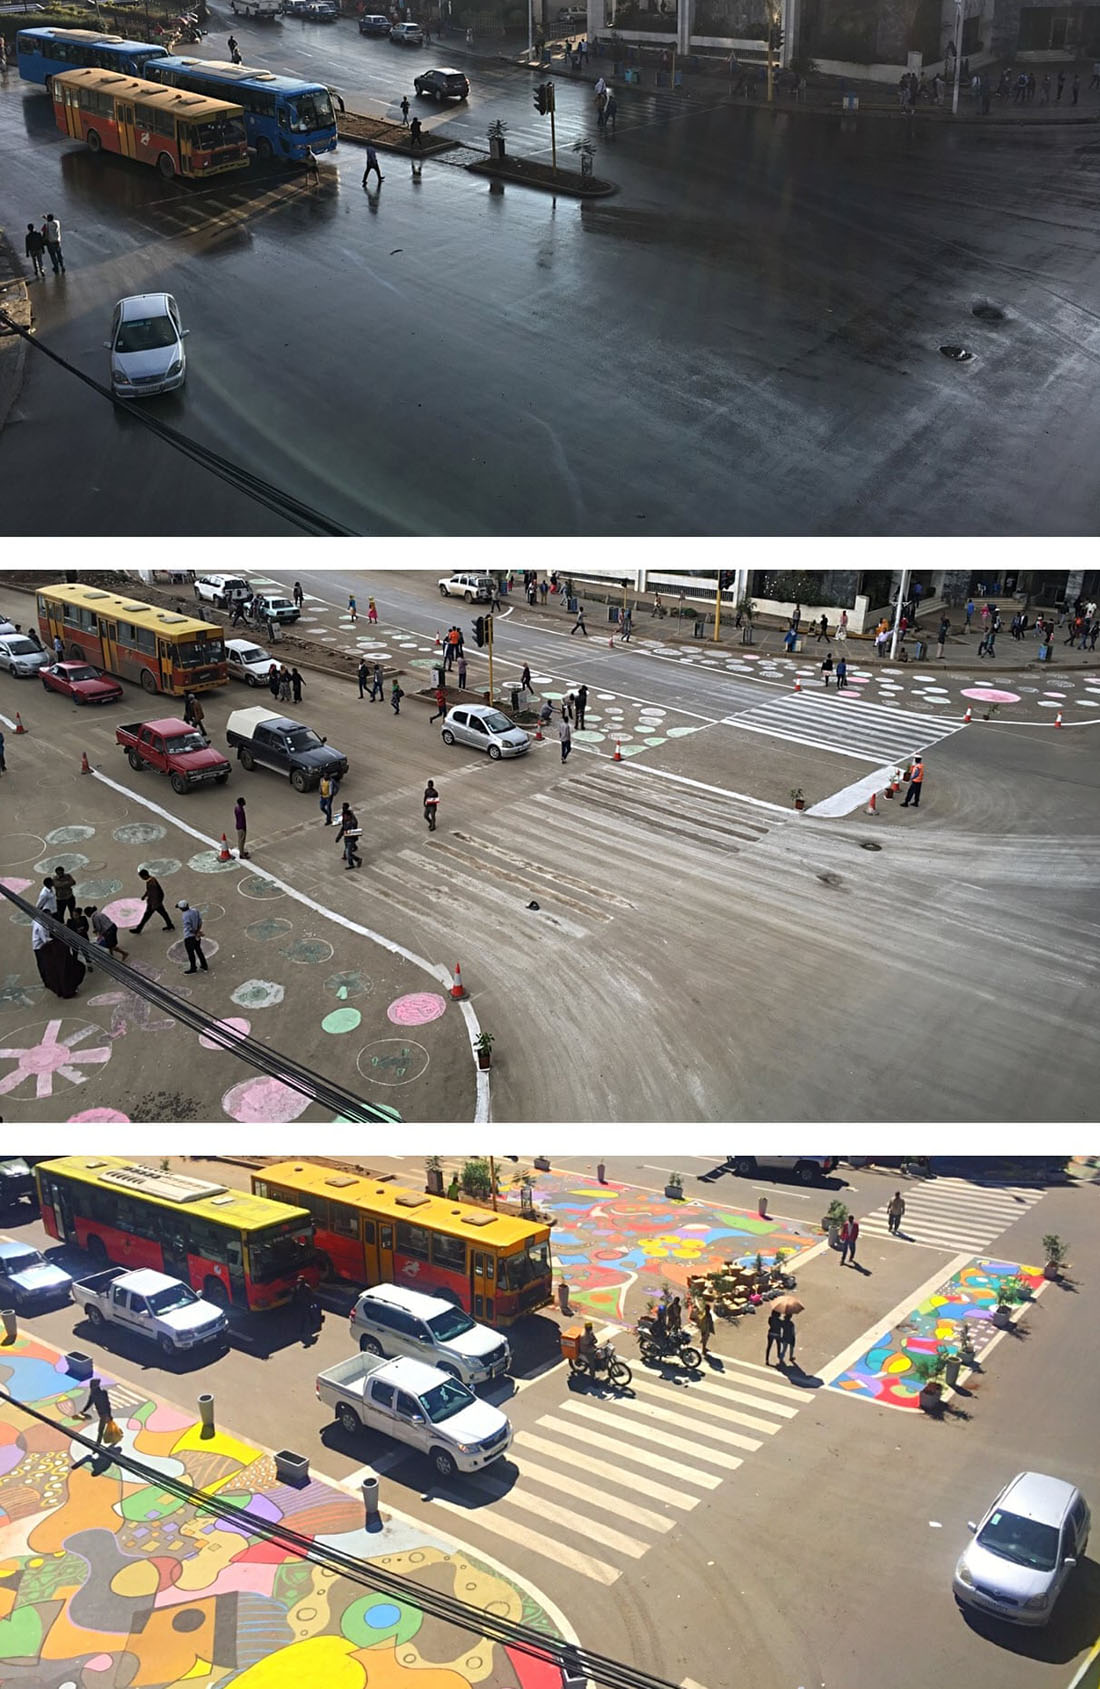 Как с помощью ведра краски сделать город лучше PCNACTOGDCI, краски, перекресток, тротуары, сделать, помощью, Бразилия, пространство, также, Здесь, Индия, Перекресток, пешеходам, результате, город, преобразовали, автомобилей, парковки, всего, безопасности